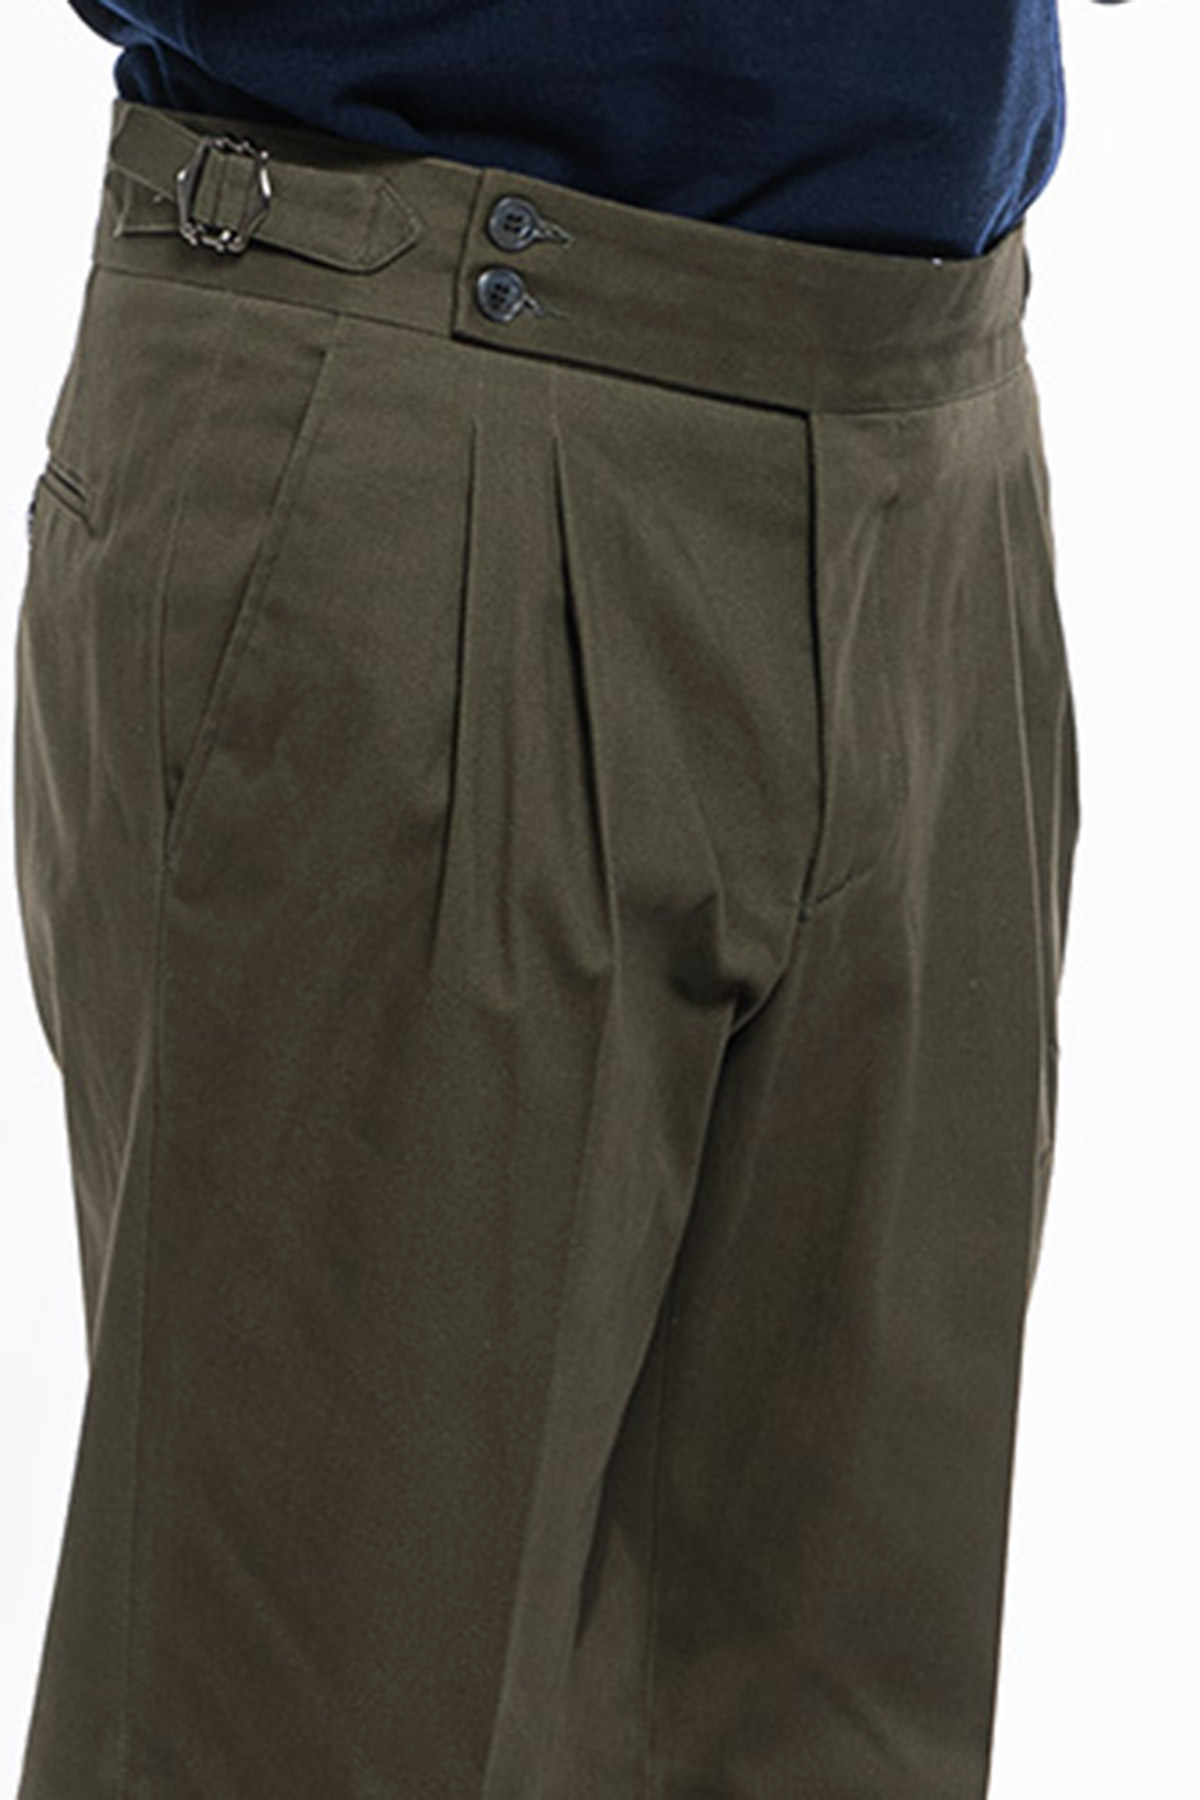 Pantalone uomo Verde militare vita alta tasca america in cotone con doppia pinces e fibbie laterali